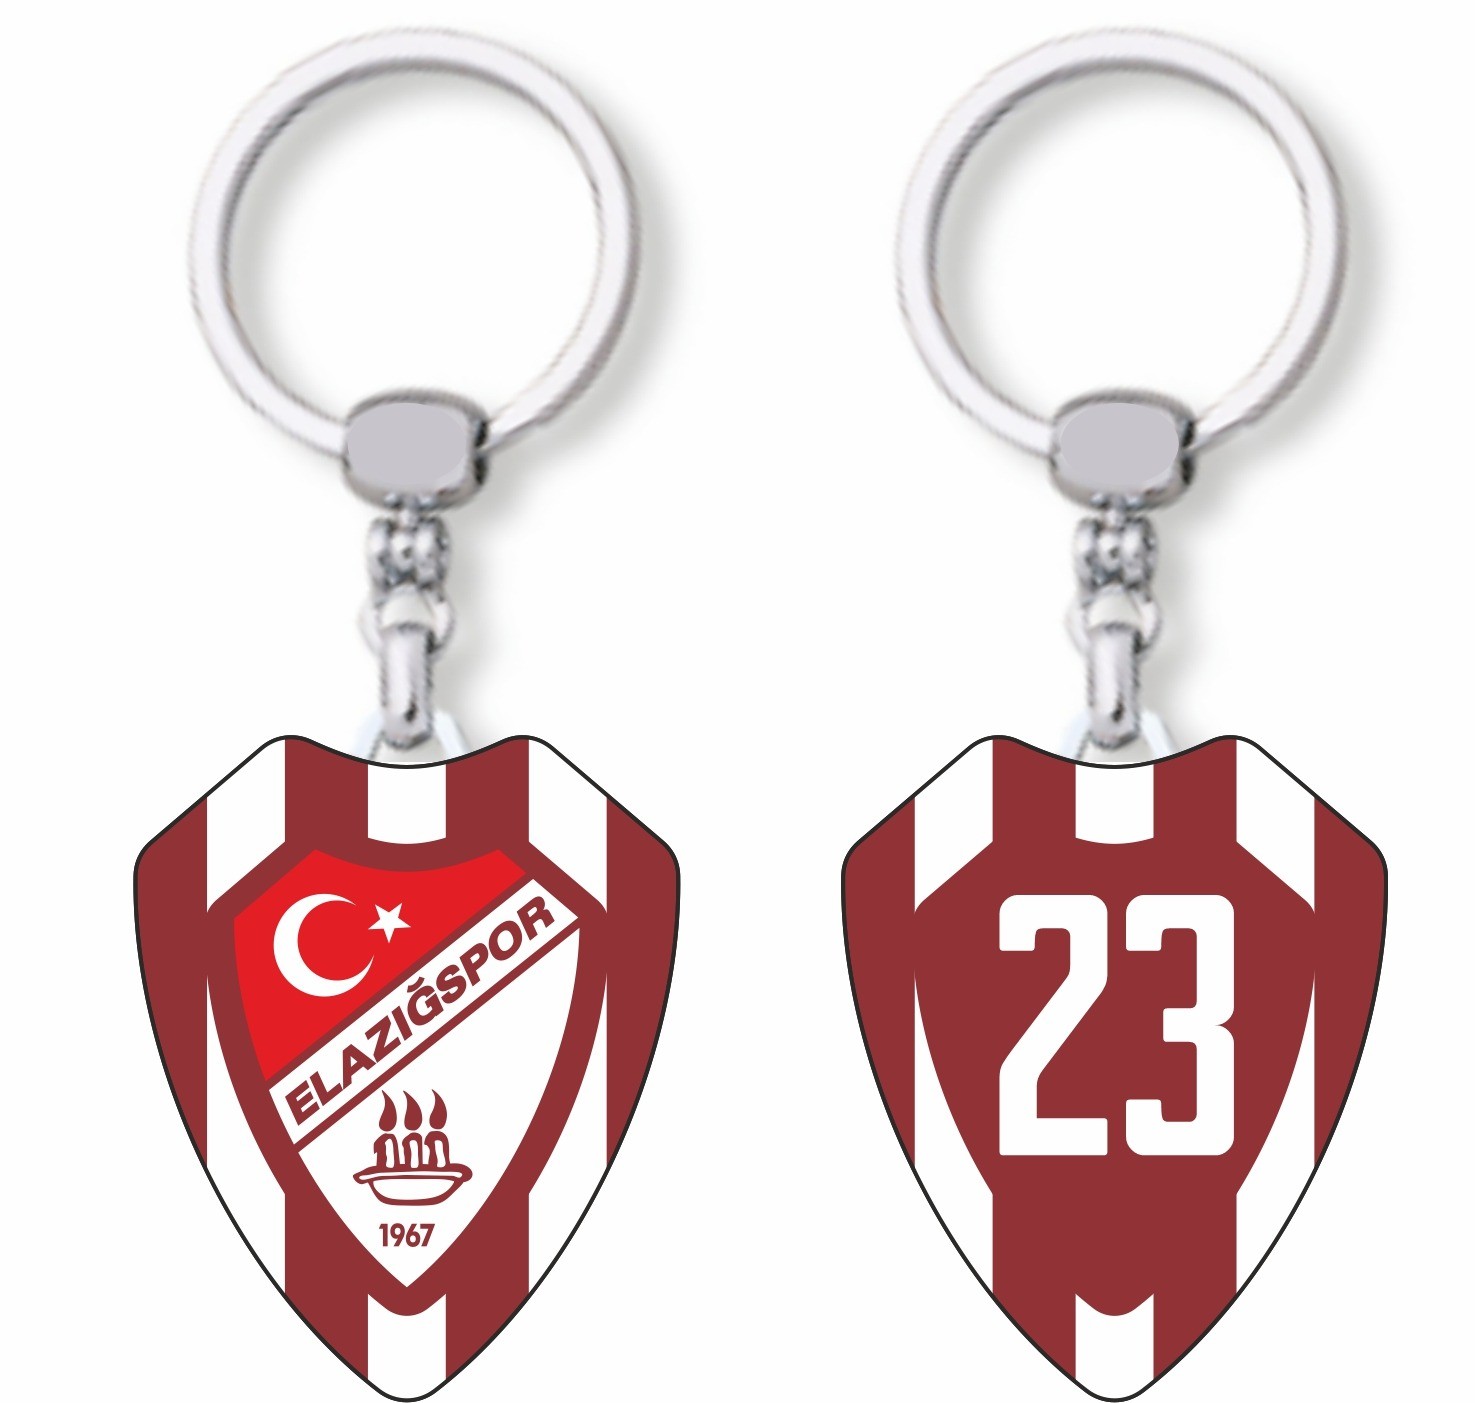 Elazığspor 23 Logolu Metal Anahtarlık